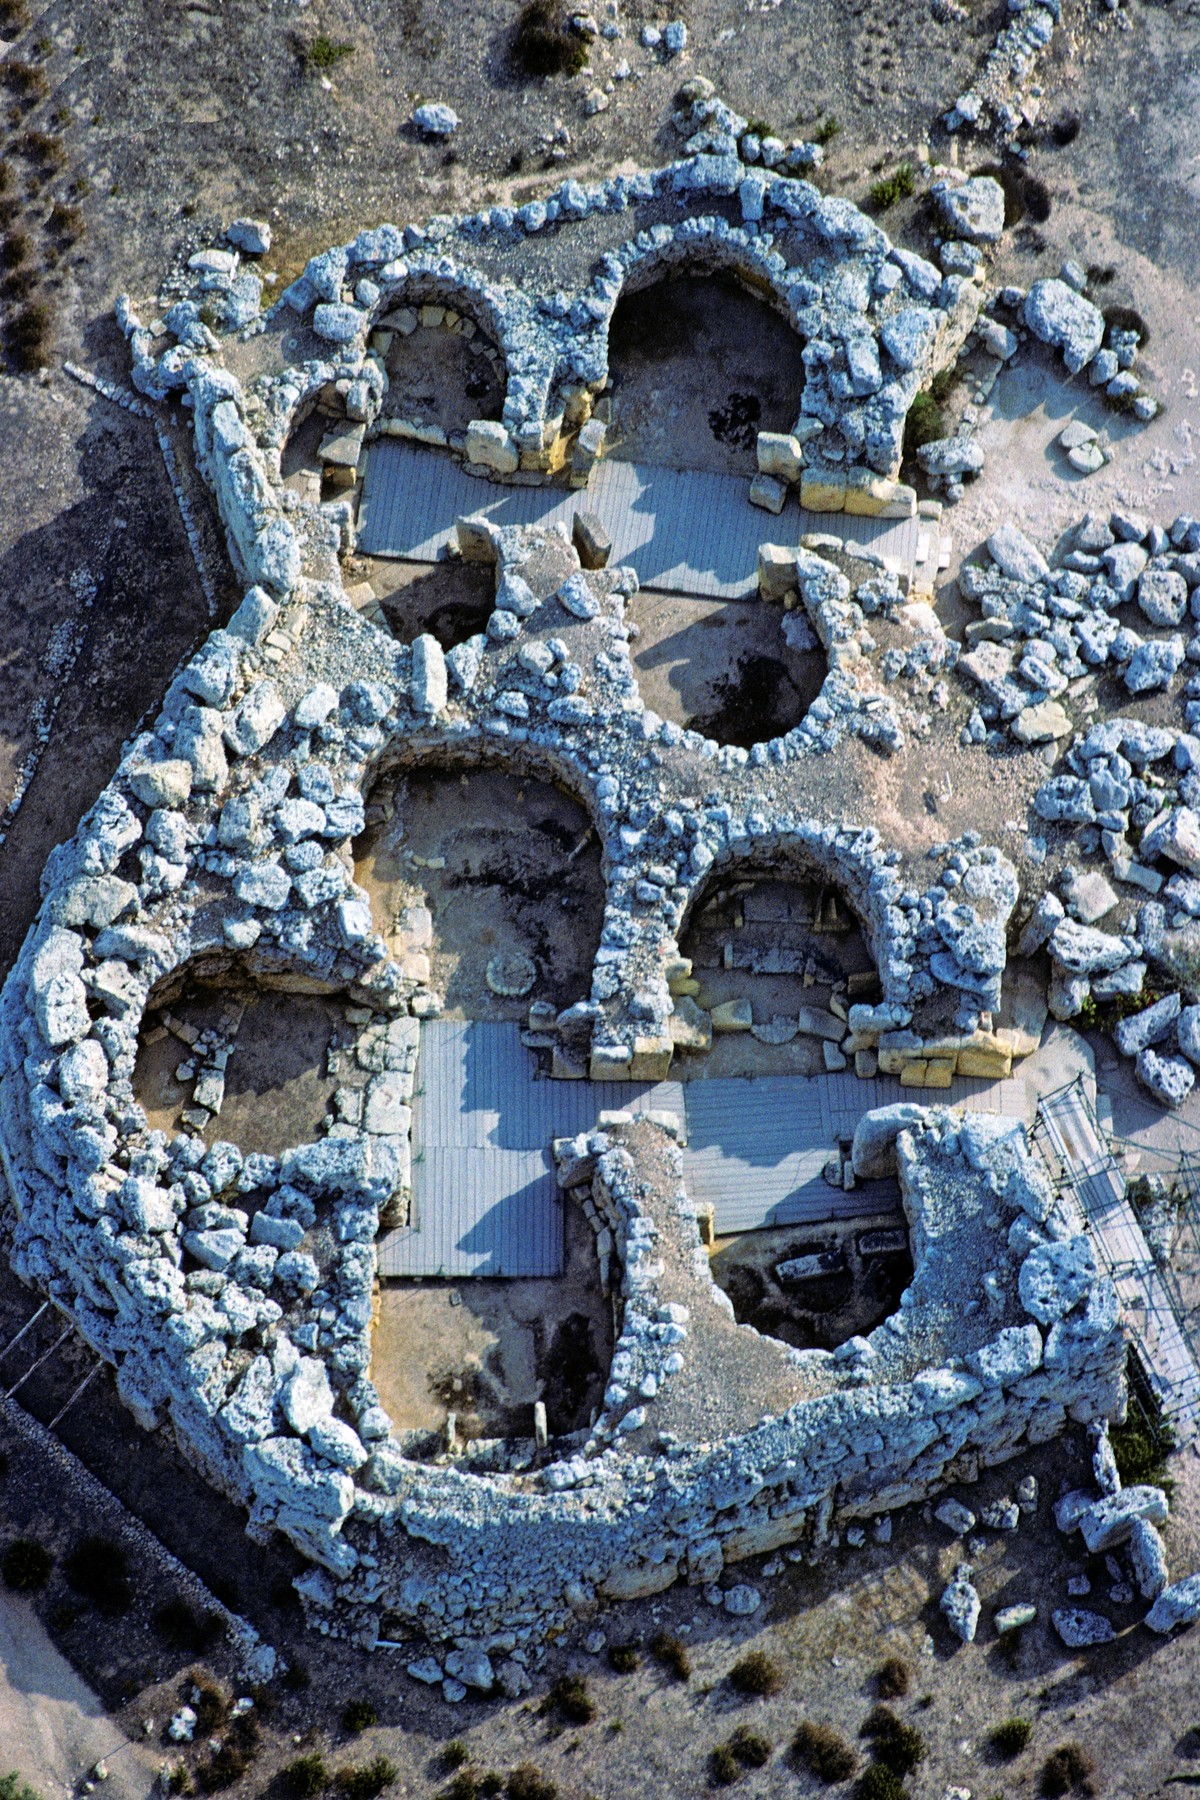 Der Doppeltempel von Ggantija auf der maltesischen Insel Gozo gehört zu den ältesten freistehenden Bauwerken der Menschheit. Das grössere und ältere der beiden Heiligtümer entstand um 3600 v.Chr. – ein Jahrtausend vor der Cheopspyramide.

Die Megalithbauten im maltesischen Archipel – 23 Anlagen unterschiedlicher Erhaltung auf der Hauptinsel Malta und auf Gozo – haben an Prominenz ständig zugelegt. Zunächst stiessen neue Datierungsverfahren die Ansicht um, die in den Megalithen des atlantischen Europa und…